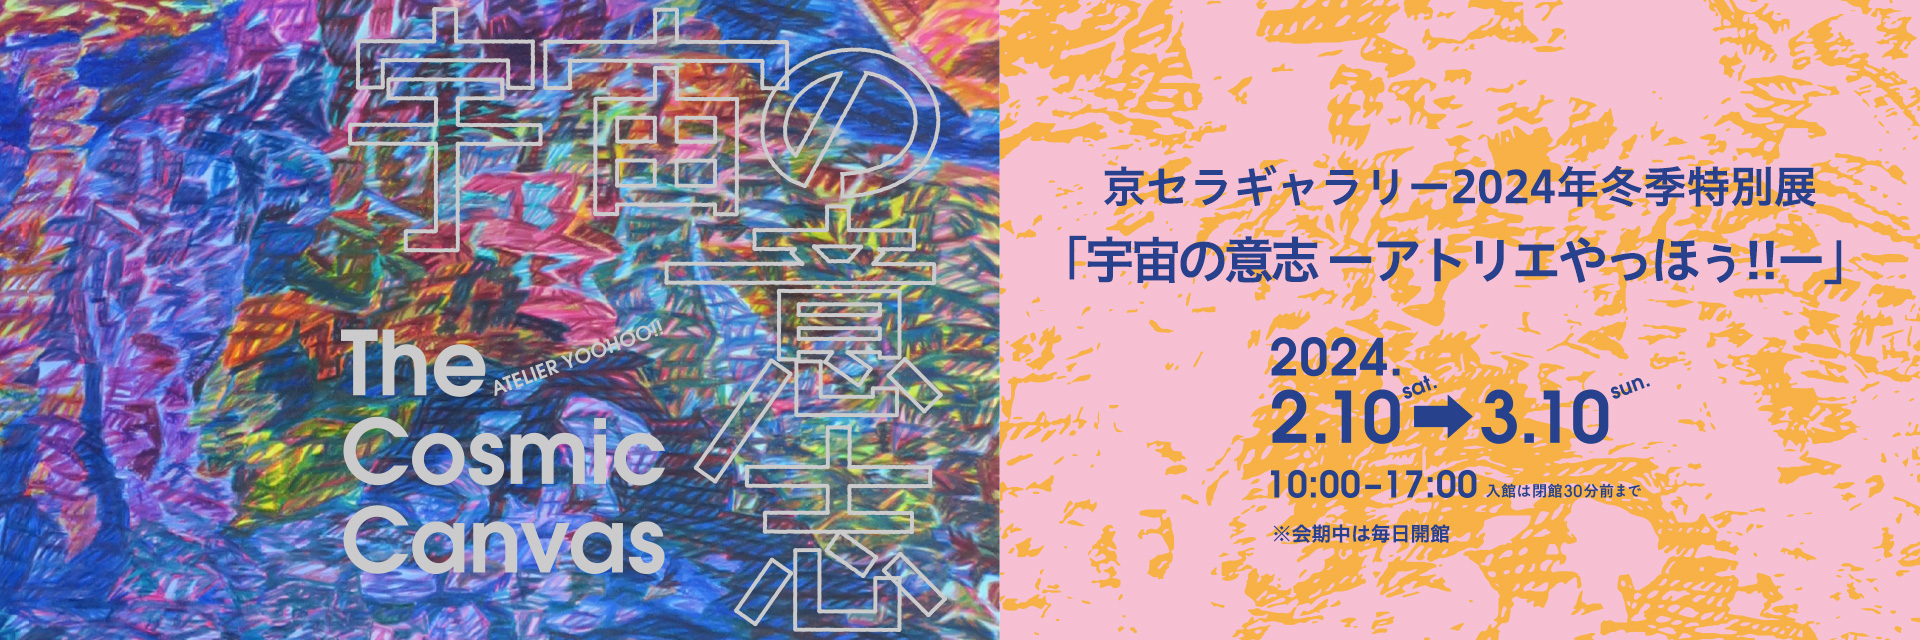 京セラギャラリー2024年冬季特別展「宇宙の意志 ーアトリエやっほぅ!!ー」